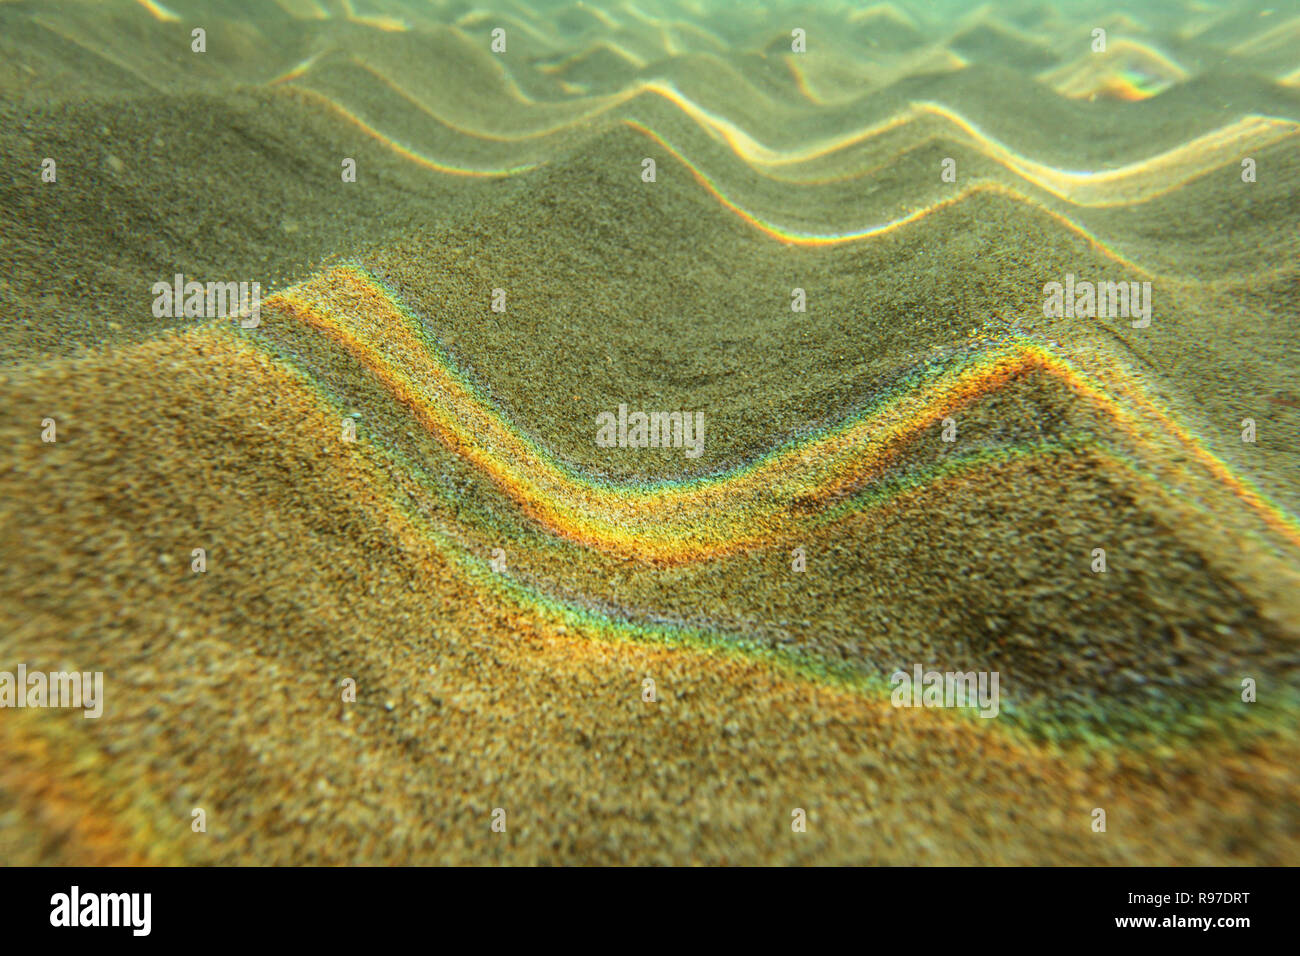 Fotografia subacquea - luce rifratta sulla superficie del mare formando arcobaleni sulla sabbia di piccole dimensioni 'dunes' in acqua poco profonda vicino alla spiaggia. Abstract sfondo marino. Foto Stock